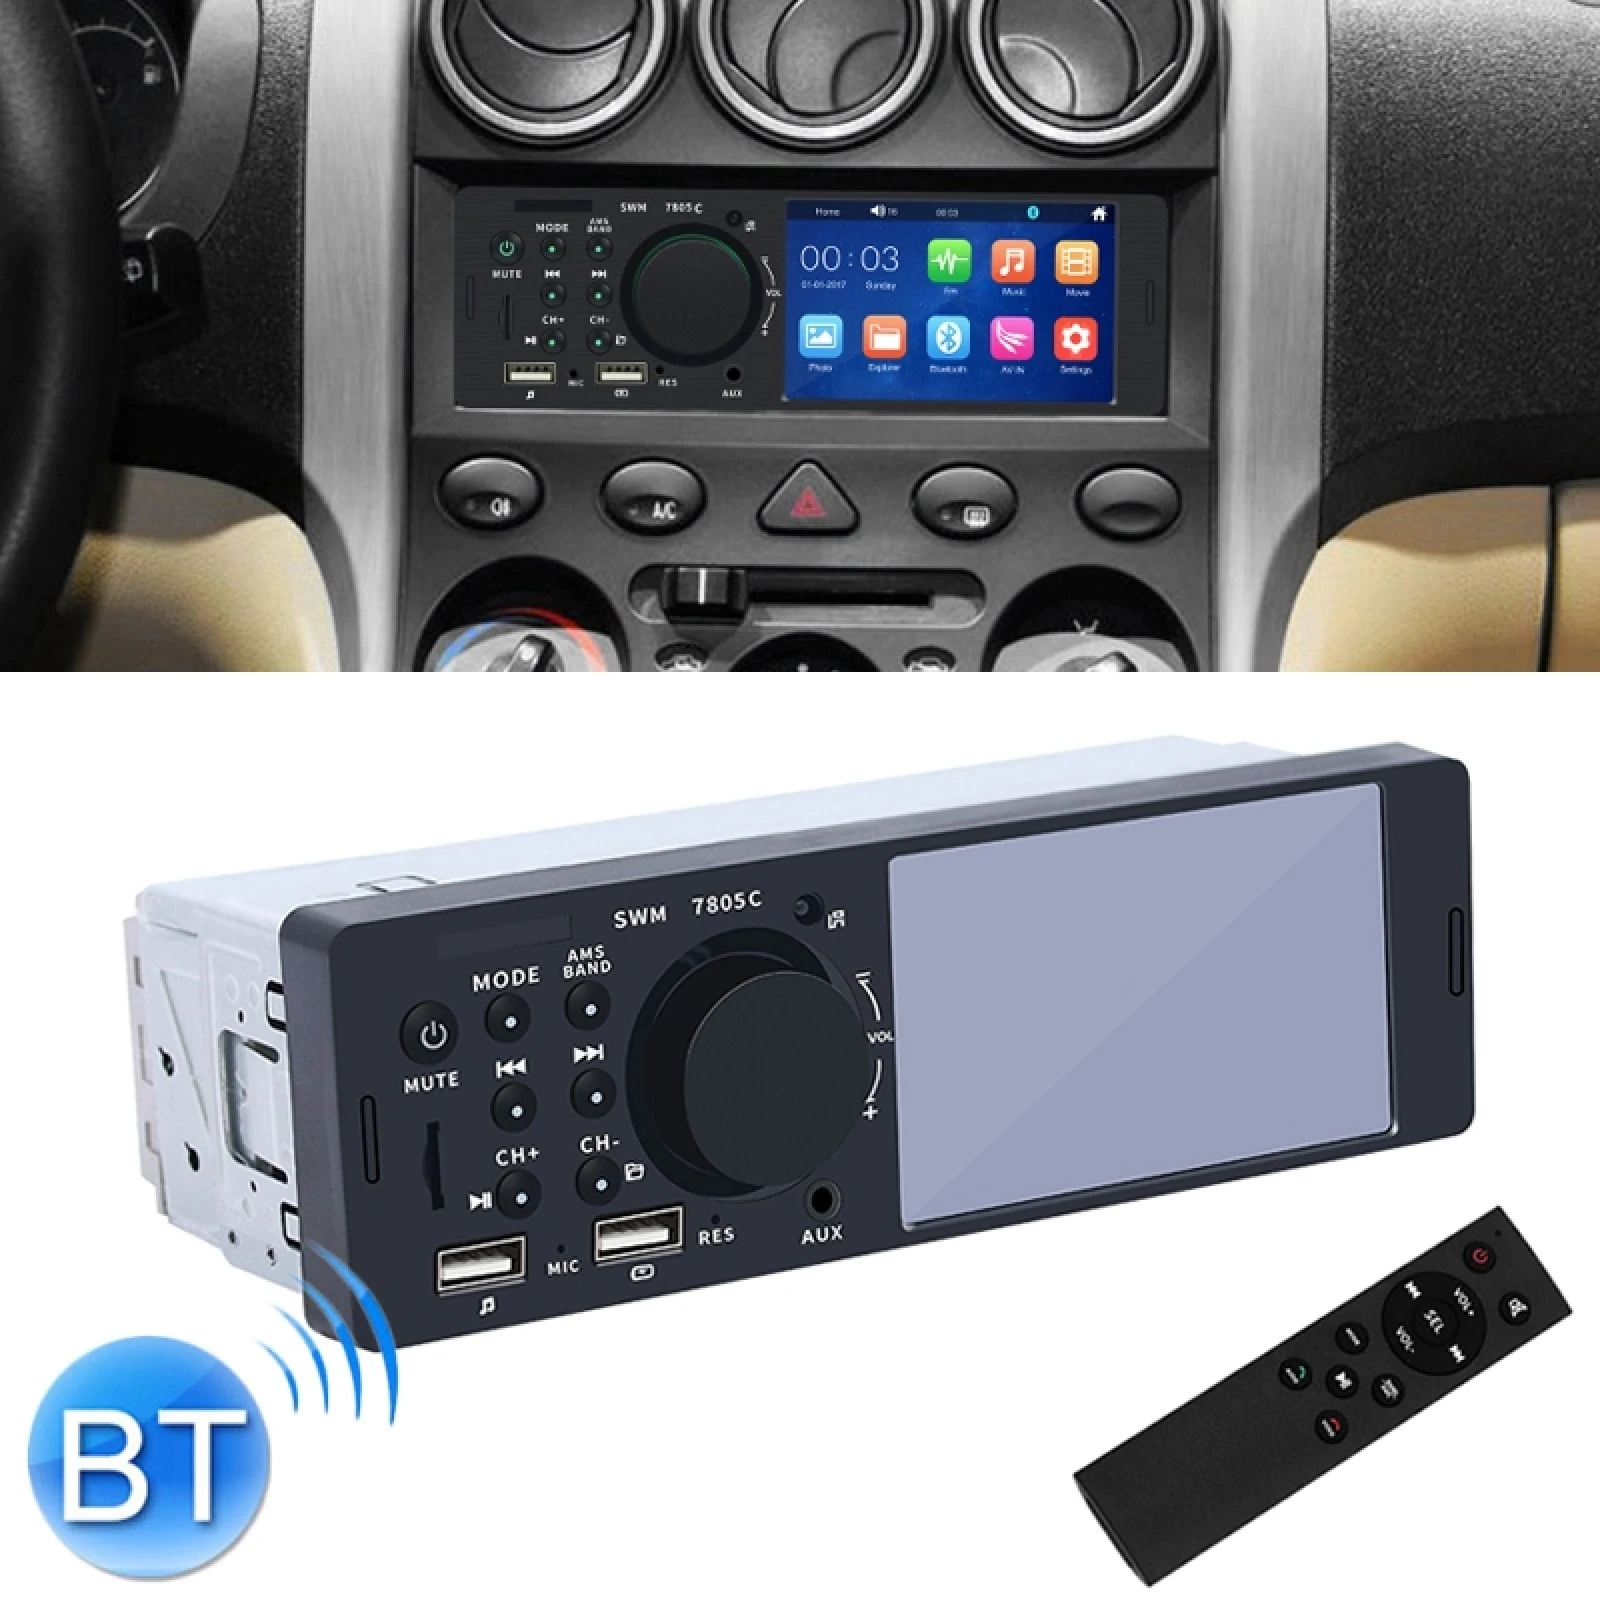 SWM-7805C 4.1 inç Dokunmatik Ekran Evrensel Araba Radyo Alıcısı MP5 Çalar, destek FM ve Bluetooth ve TF Kart Uzaktan Kumanda ile